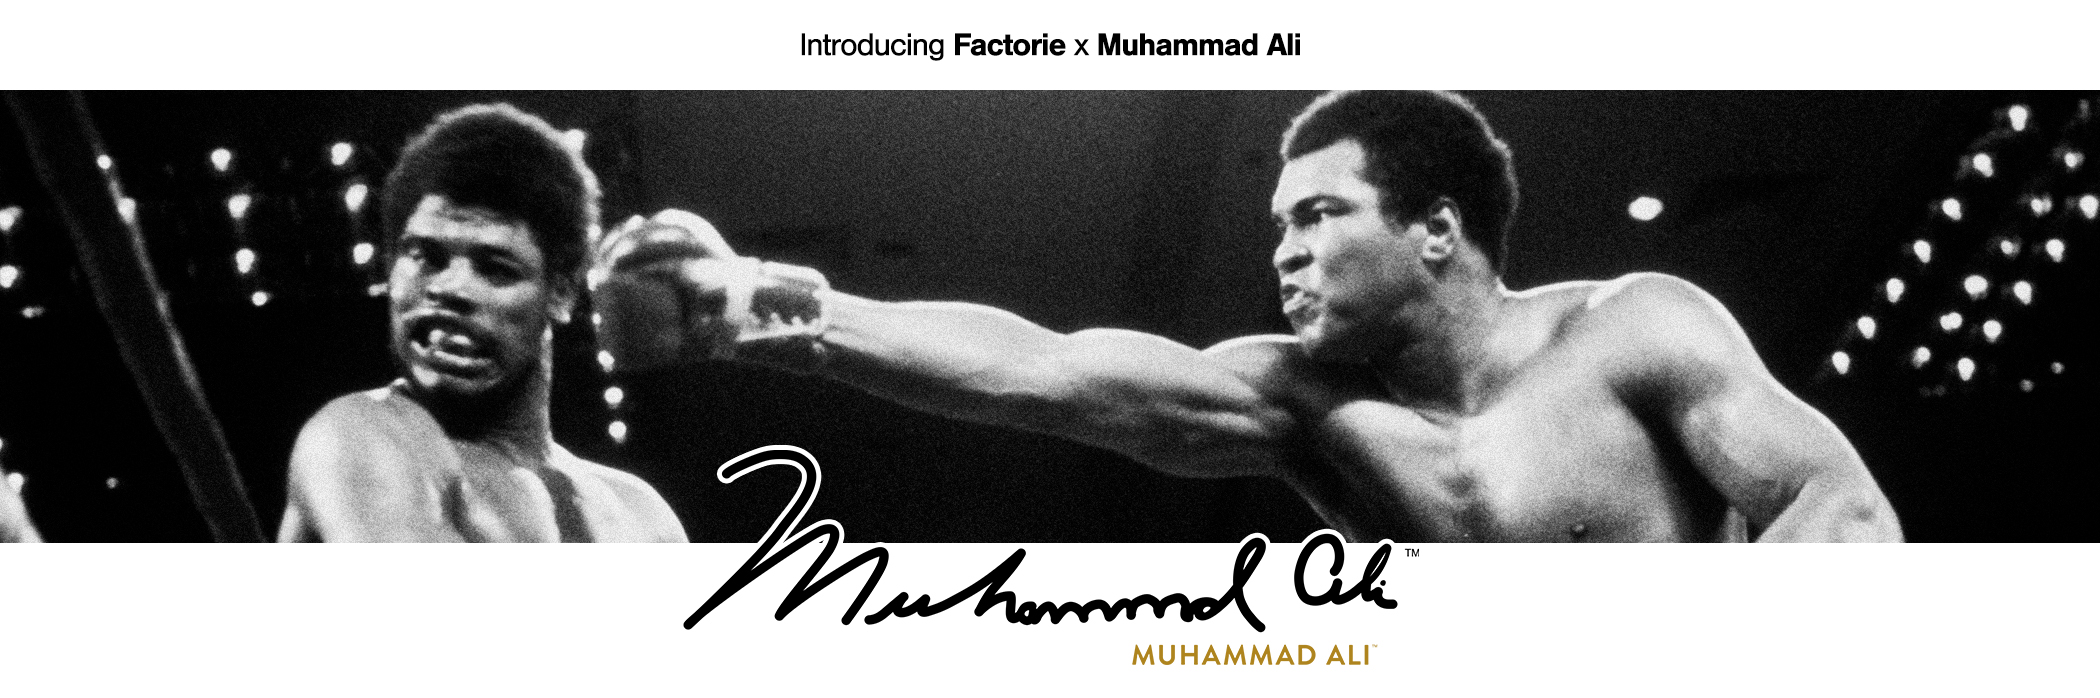 Factorie x Muhammad Ali